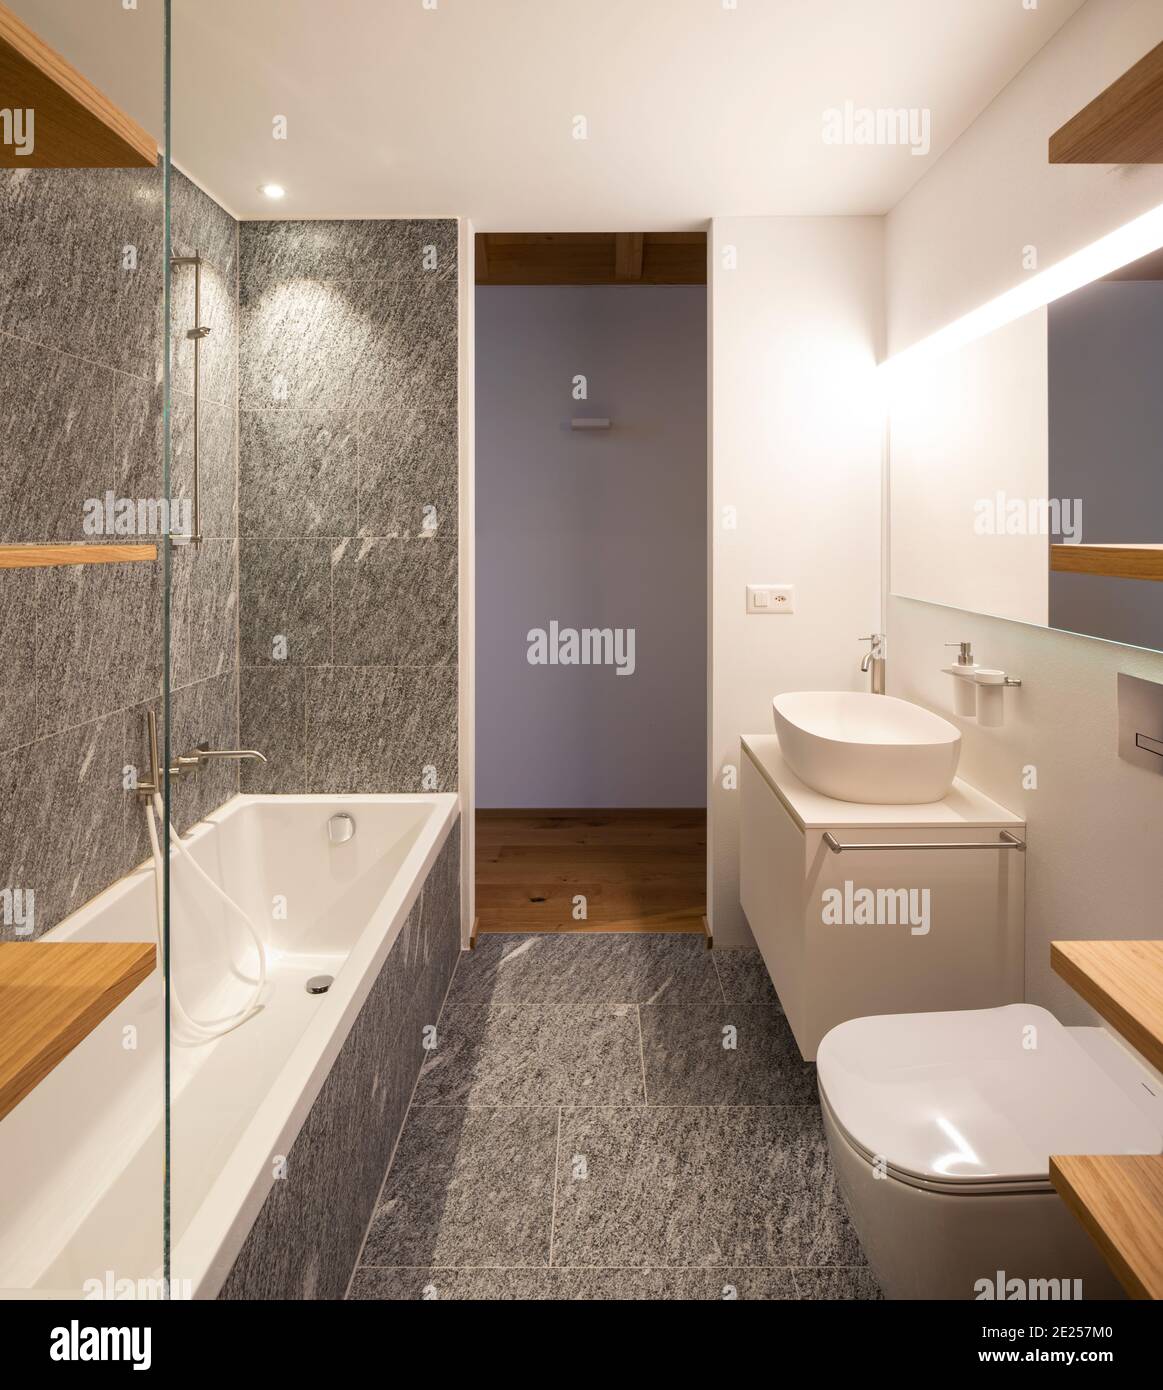 Interior moderno con paredes blancas y pisos de madera. Baño moderno con madera y piedra, minimalista. Nadie dentro Foto de stock